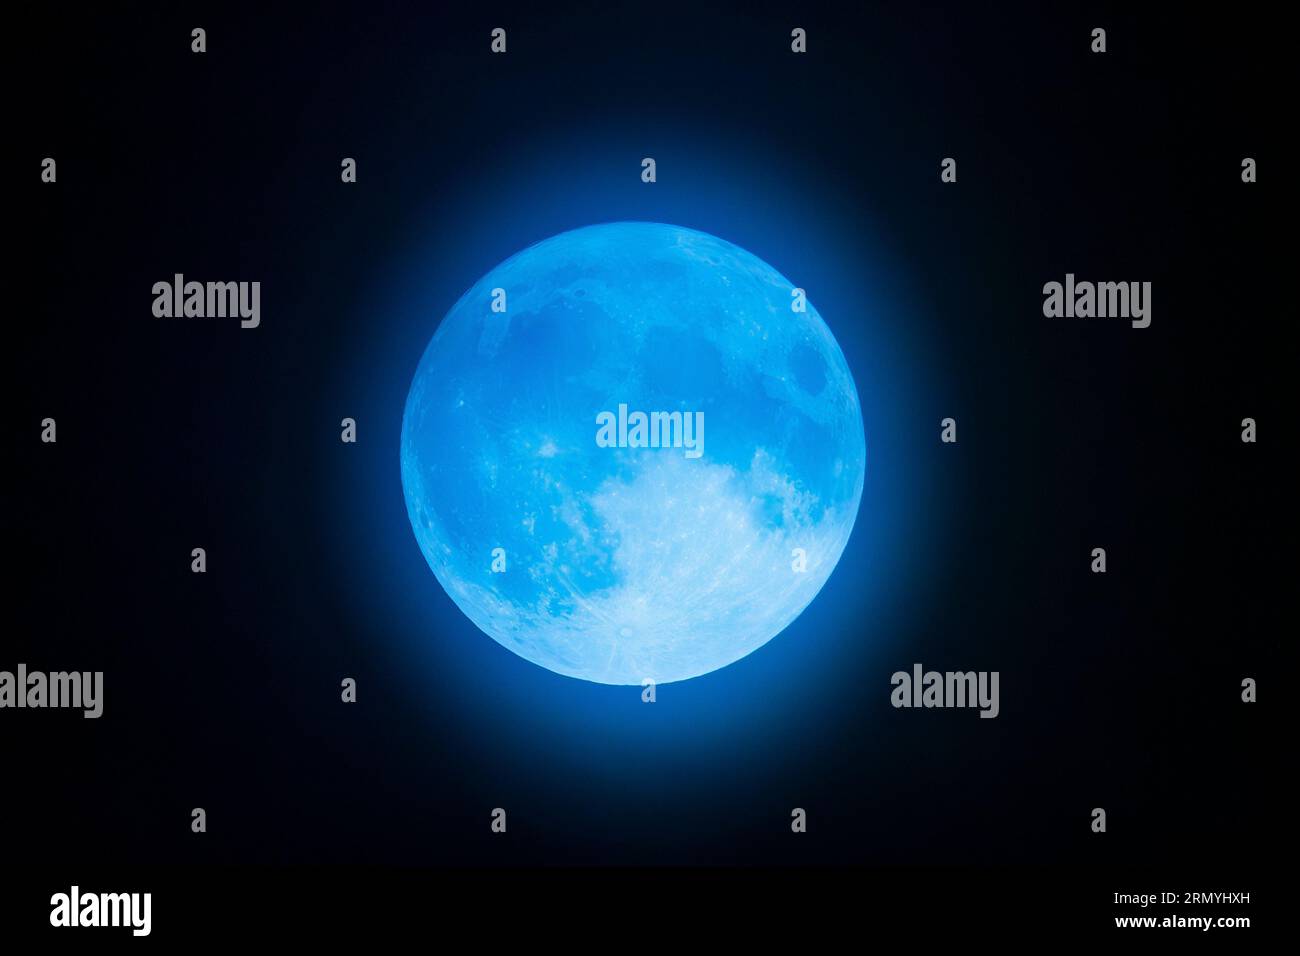 France, Loiret (45), Orléans, Super lune bleue observée mercredi 8/30/23, phénomène rare survenant tous les 10 ou 20 ans selon la NASA Banque D'Images